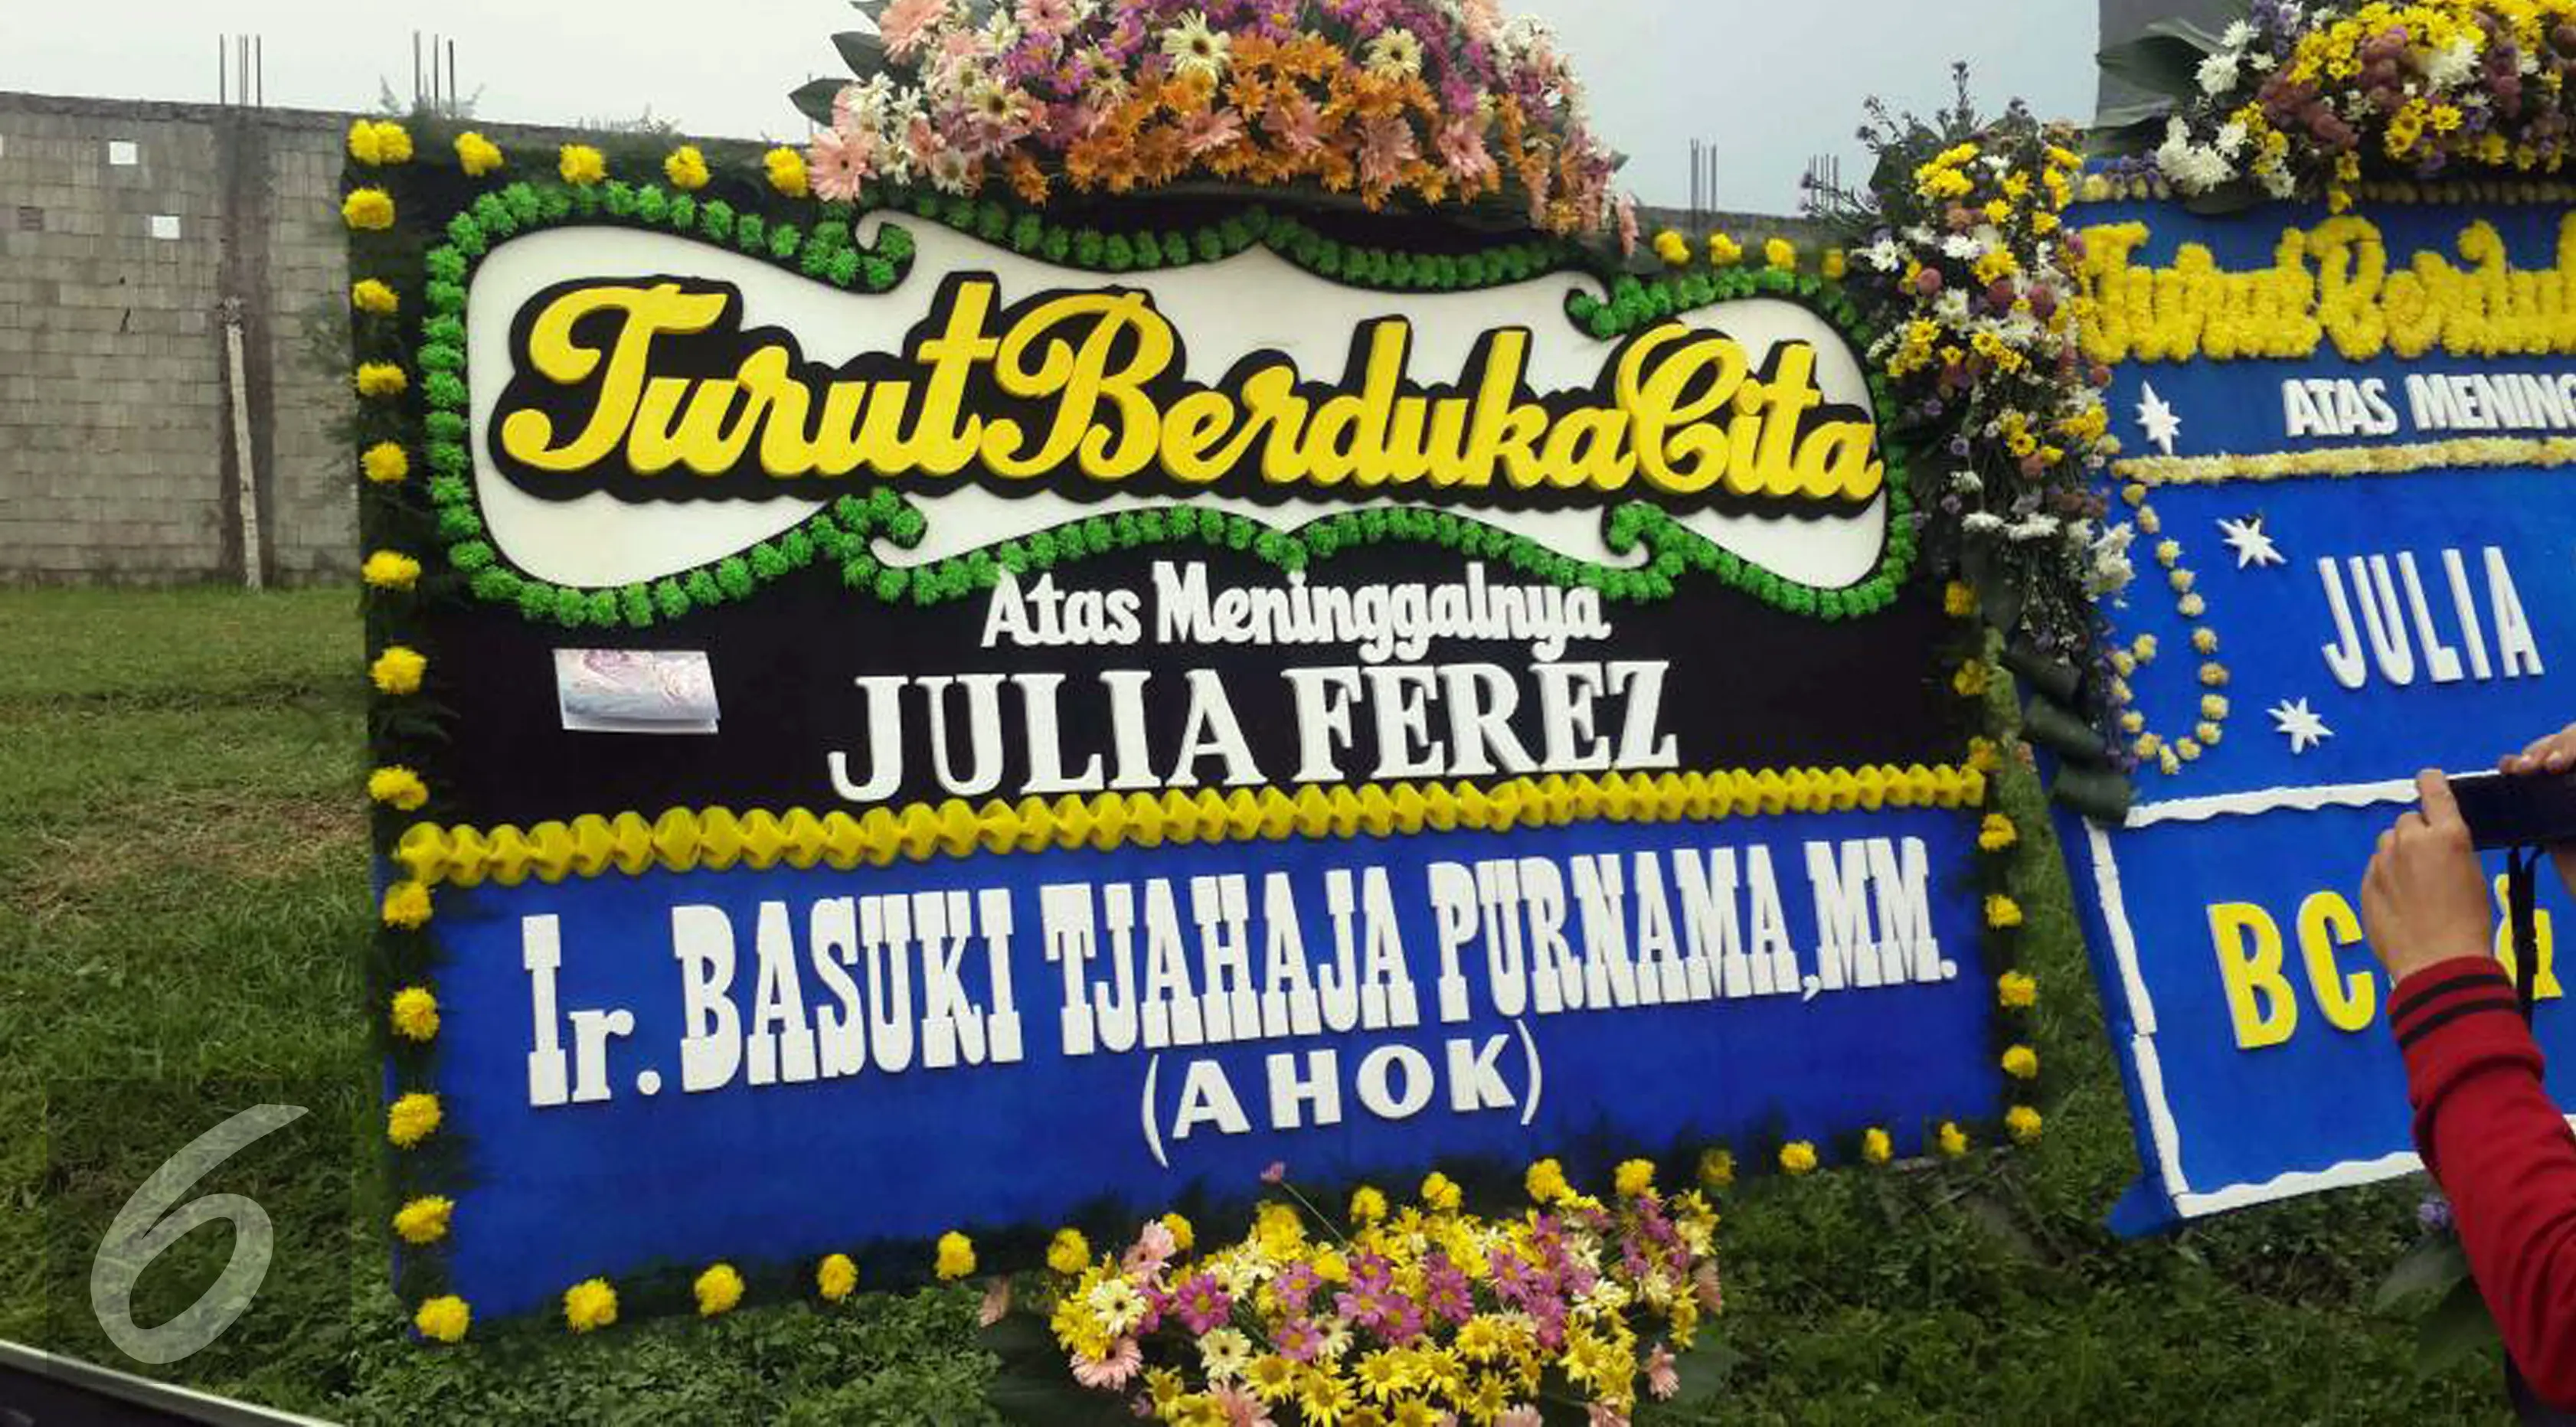 Karangan bunga ungkapan duka cita dari Basuki Tjahaja Purnama alias Ahok untuk Julia Perez alias Jupe. (Sapto Purnomo/Liputan6.com)